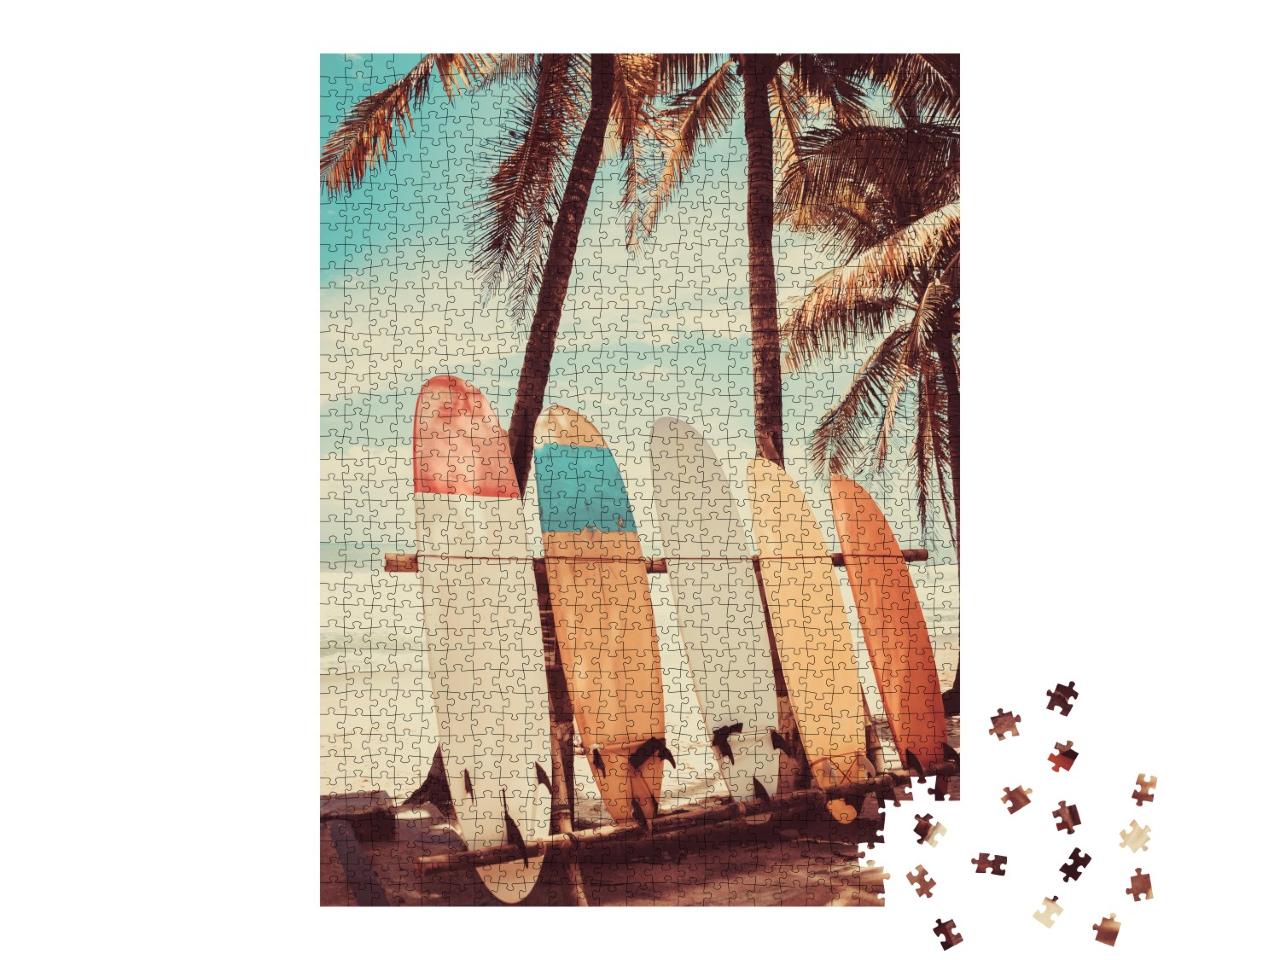 Puzzle de 1000 pièces « Planches de surf sous les palmiers sur la plage »